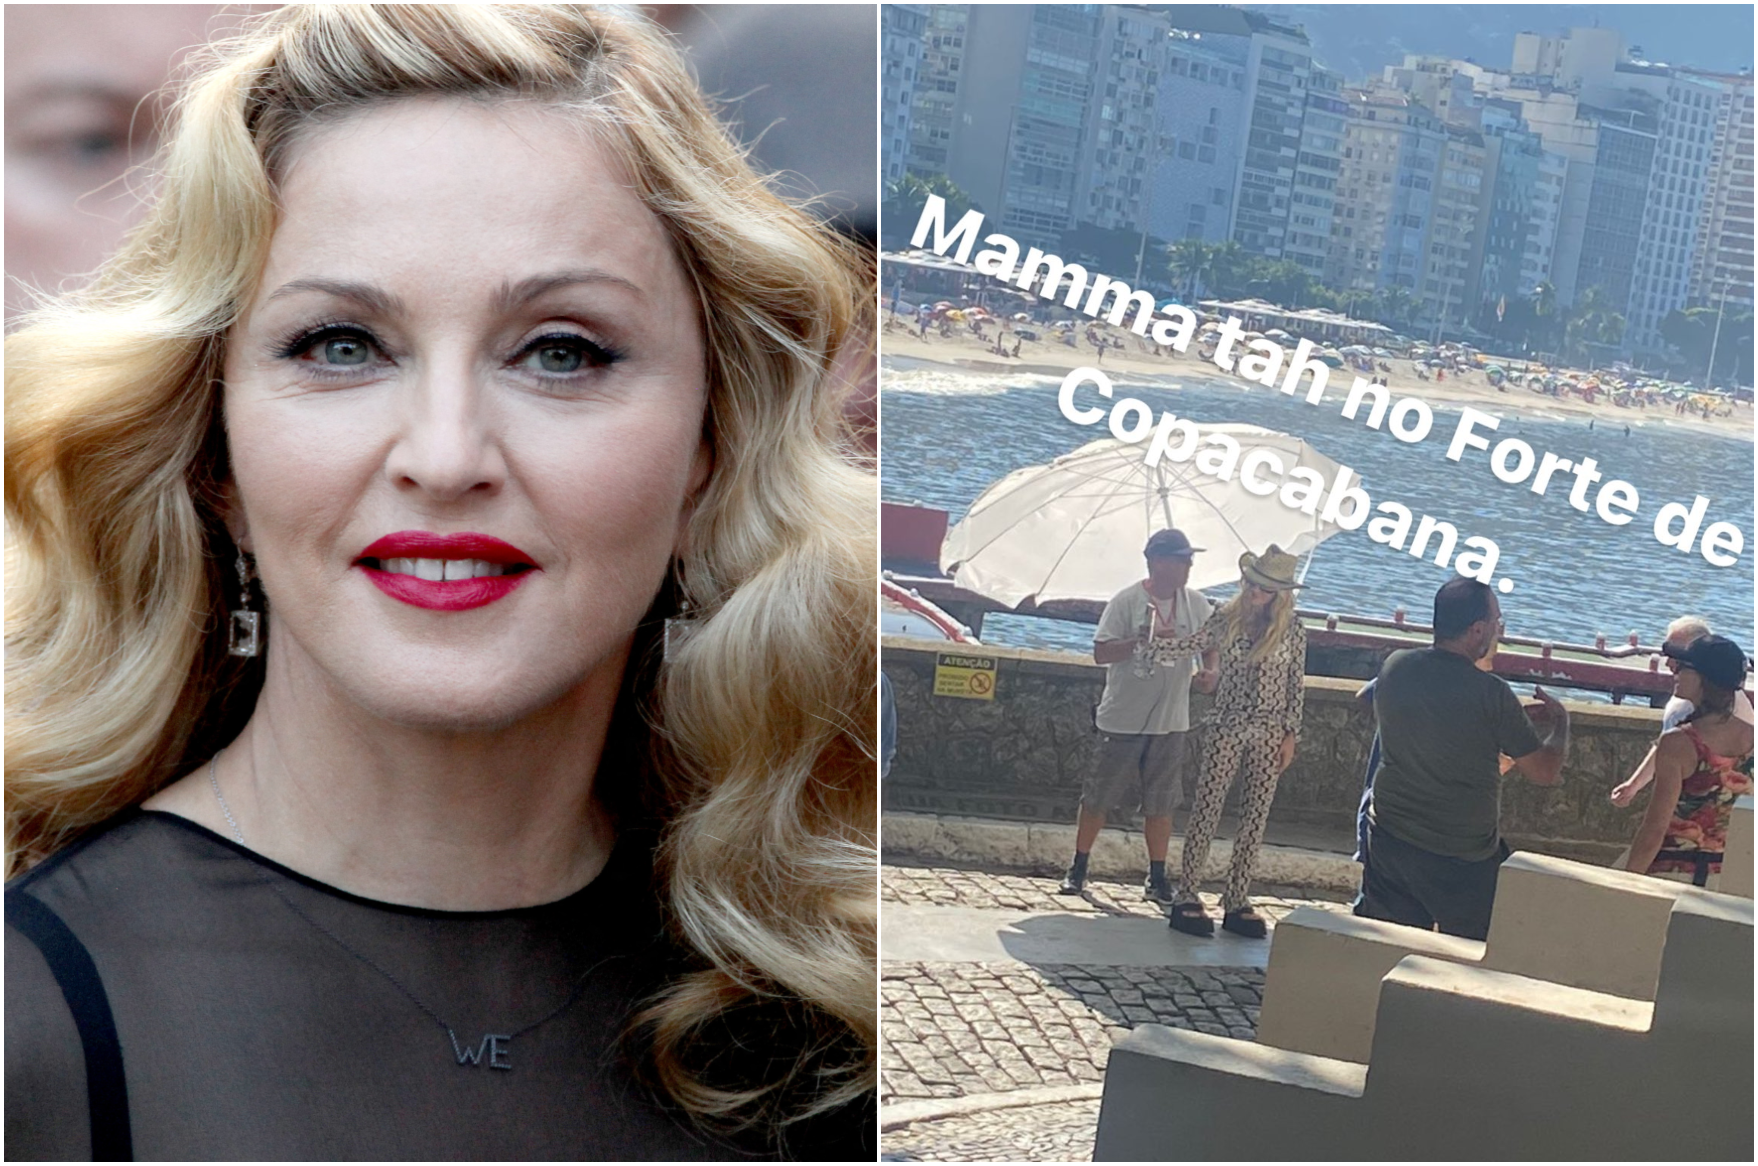 Madonna passeando em Copacabana? Atriz é confundida com cantora no Rio